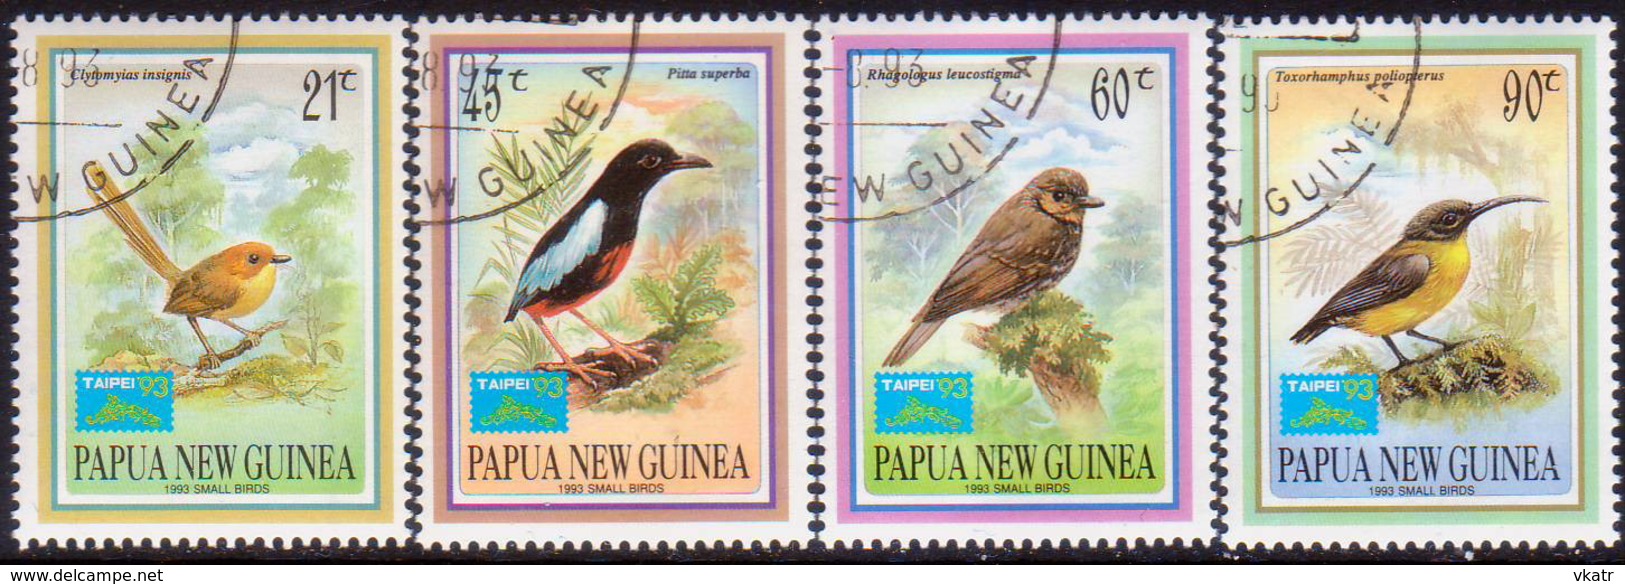 PAPUA NEW GUINEA 1993 SG #687-90 Compl.set. Used Small Birds Set Optd "Taipei '93" - Papua New Guinea